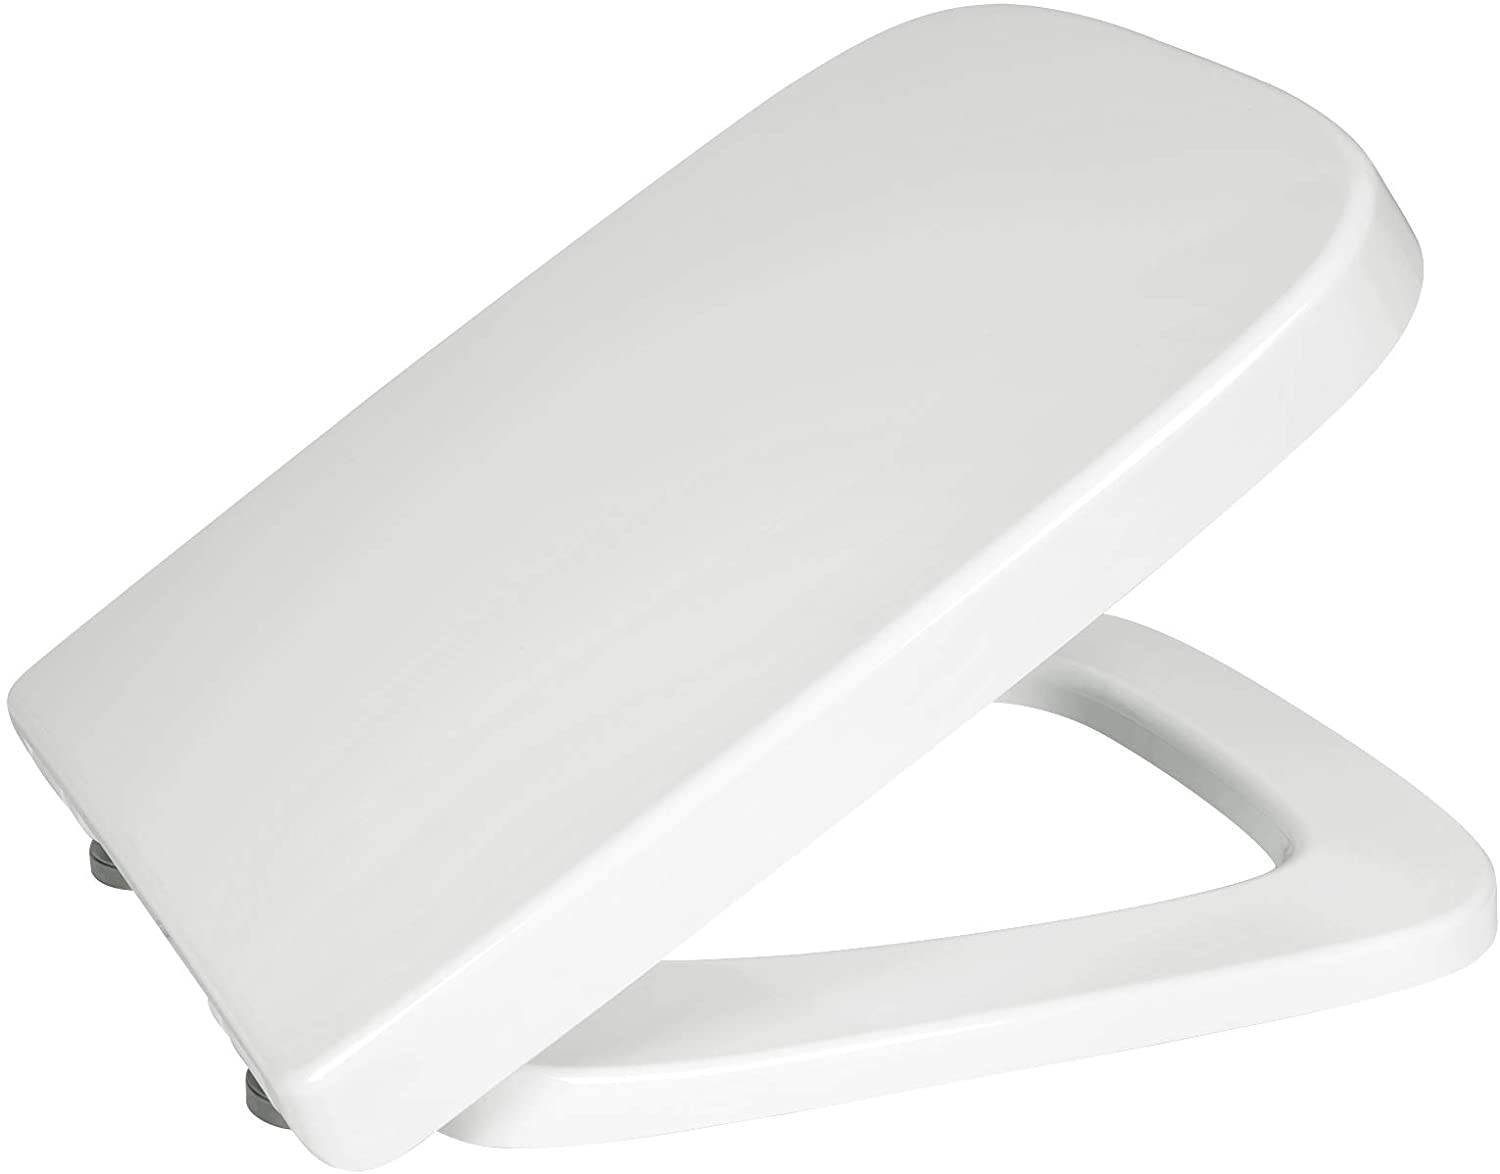 EUGAD WC-Sitz (1-St), Toilettendeckel mit Absenkautomatik Eckige Form Weiß